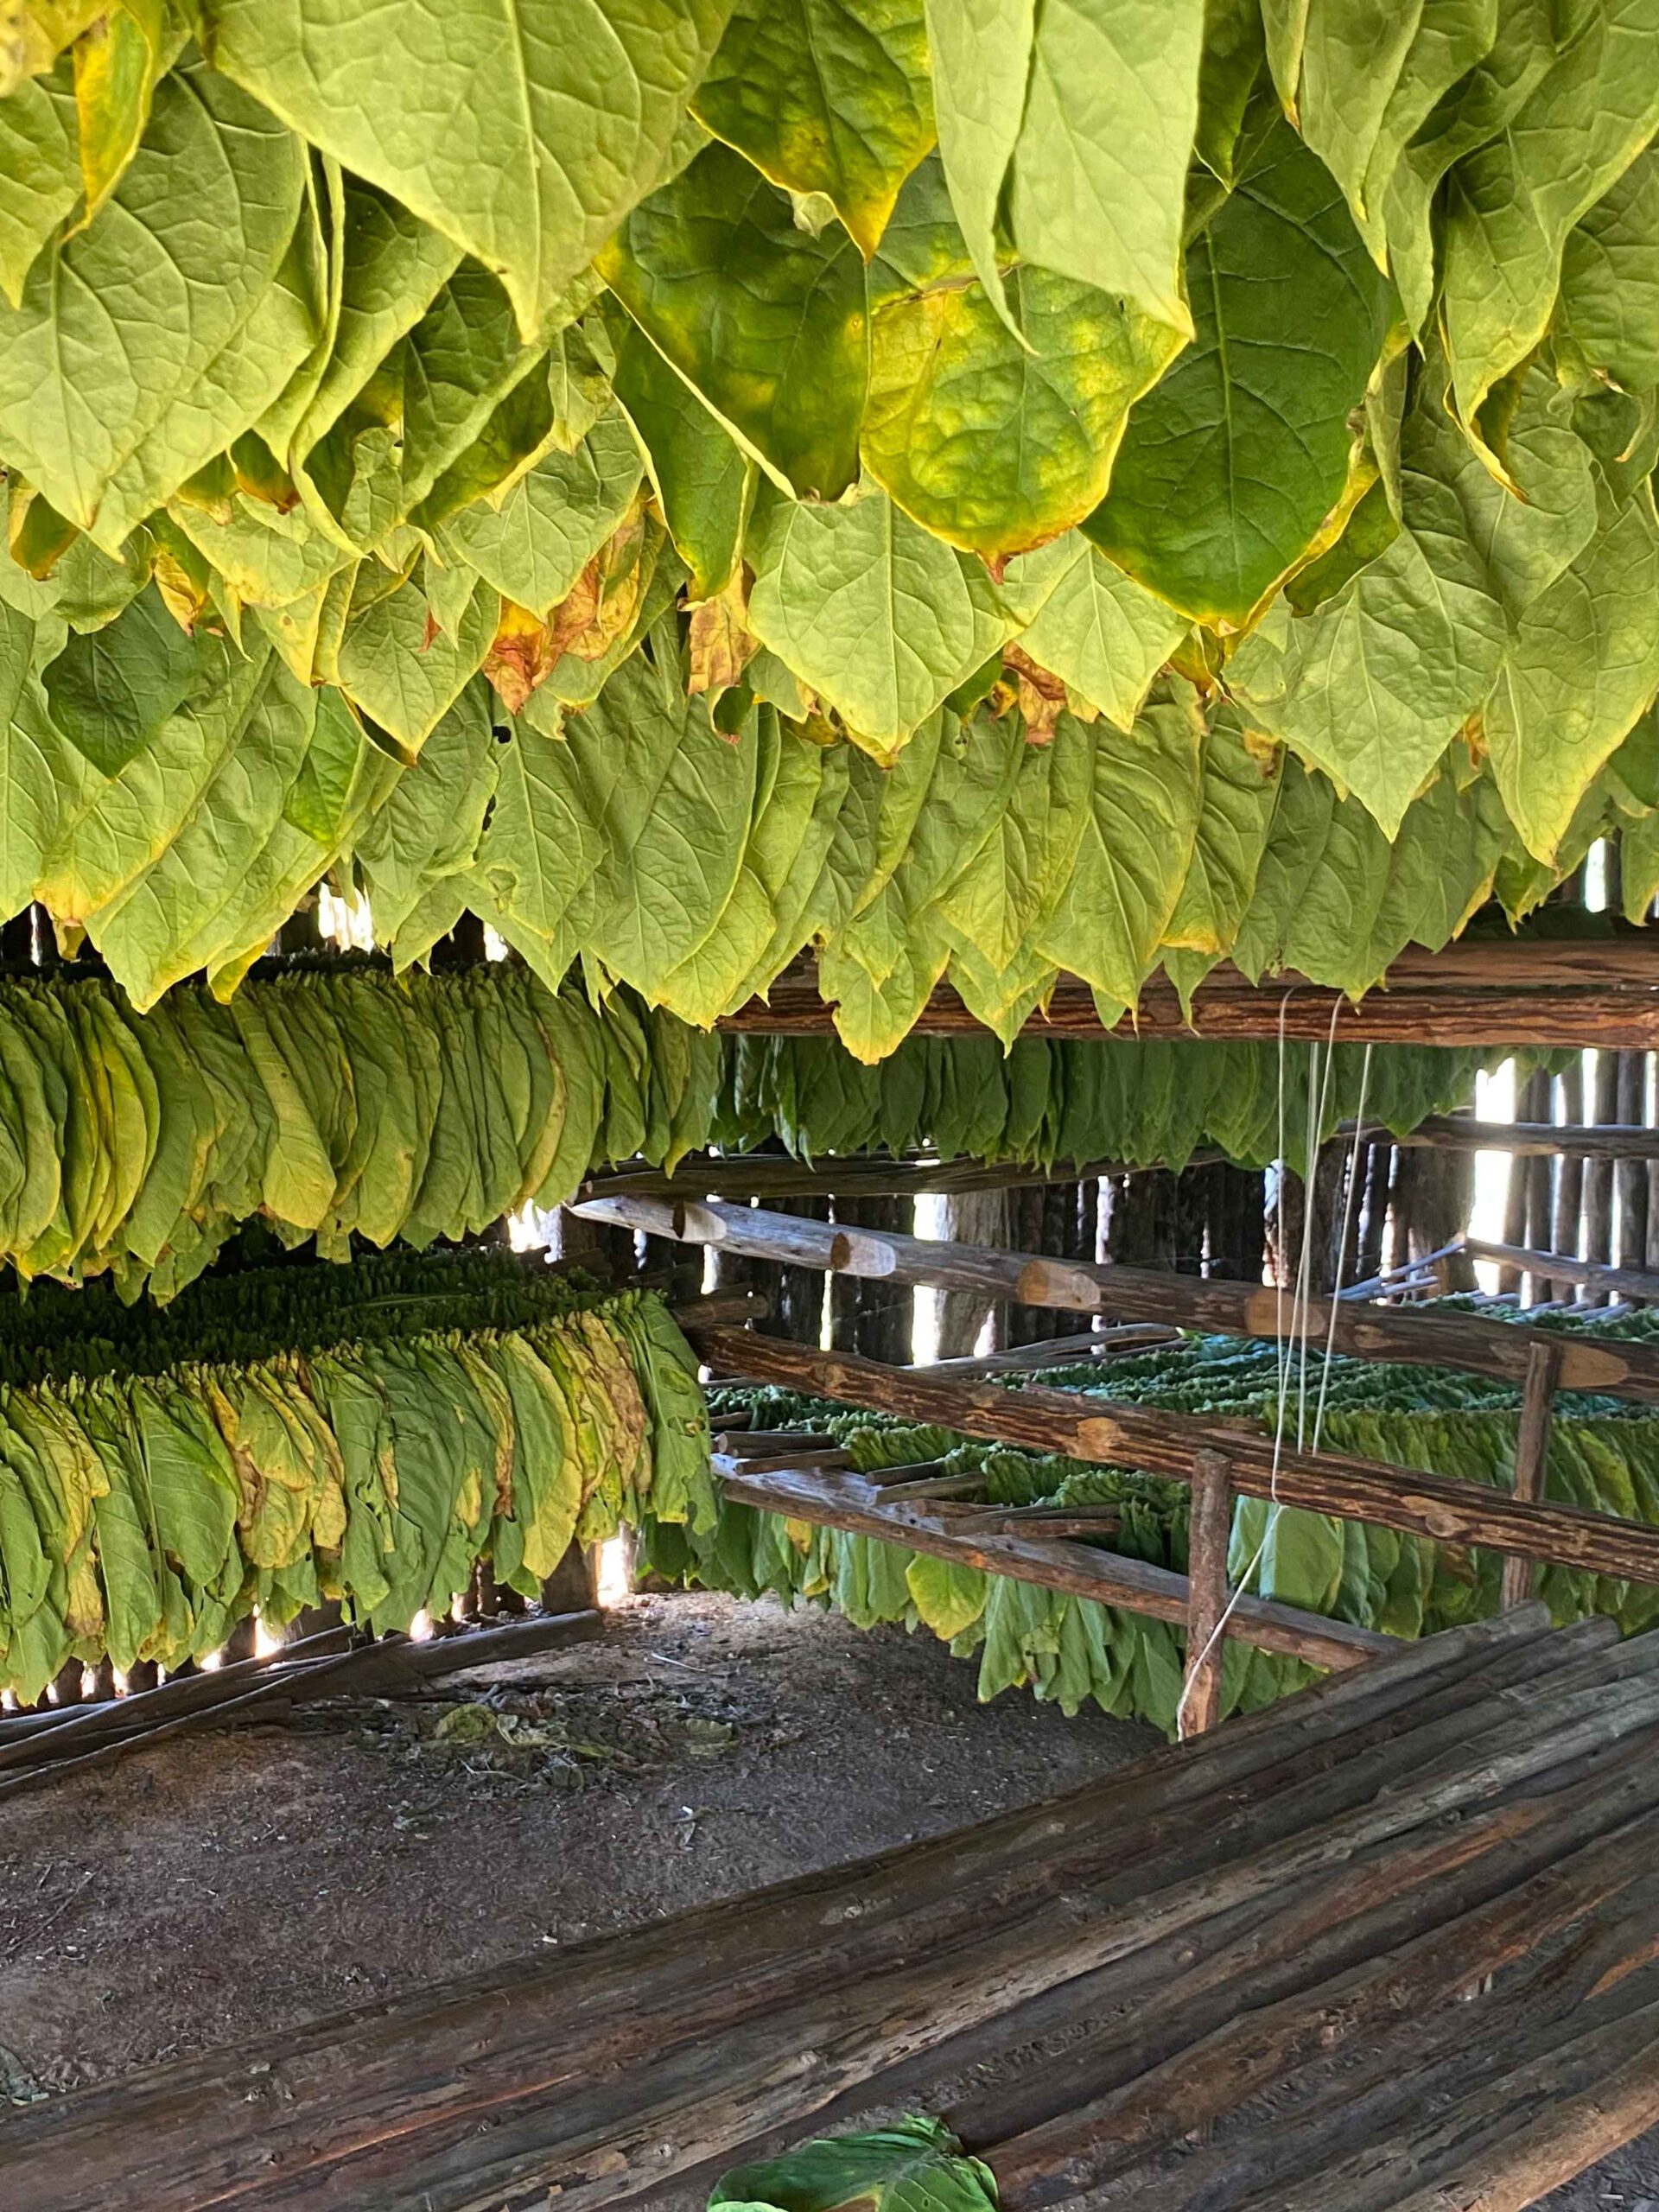 Hier werden gerade die Tabakblätter getrocknet, um sie dann weiter zu verarbeiten und Zigarren zu produzieren.